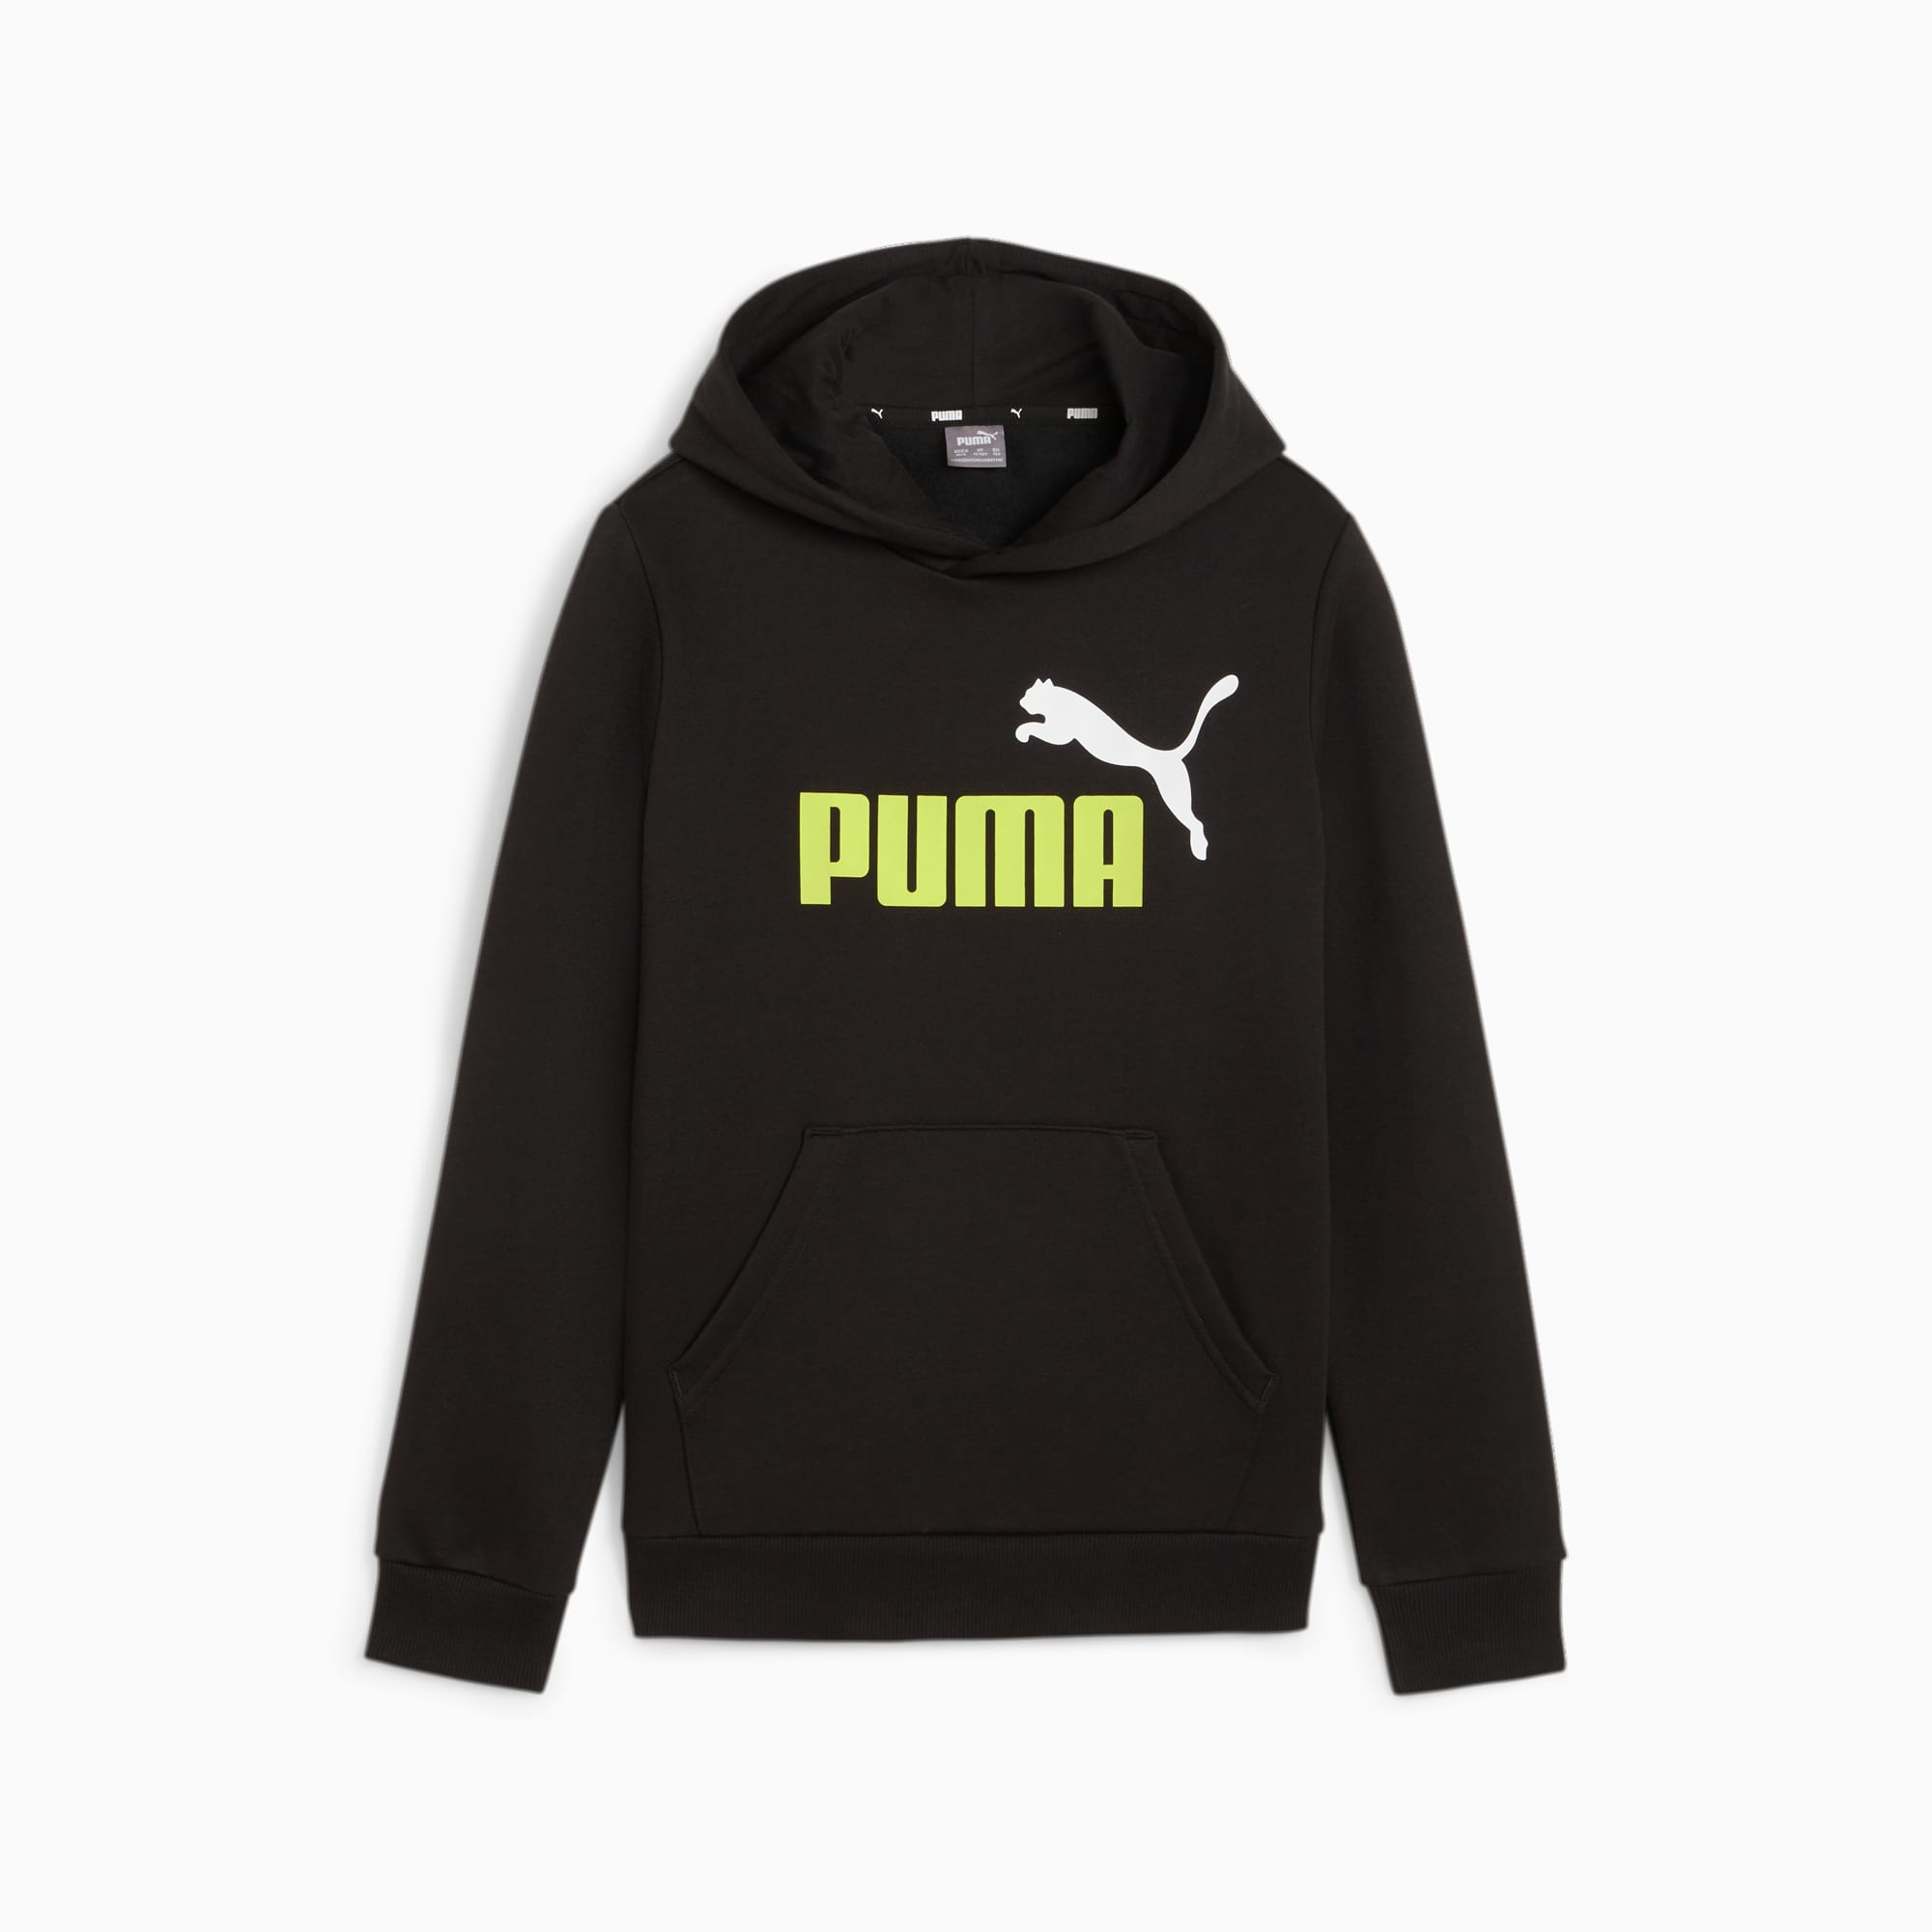 PUMA Chaussure Sweat à Capuche Essentials+ Two-Tone Big Logo Enfant Et Adolescent, Noir/Vert